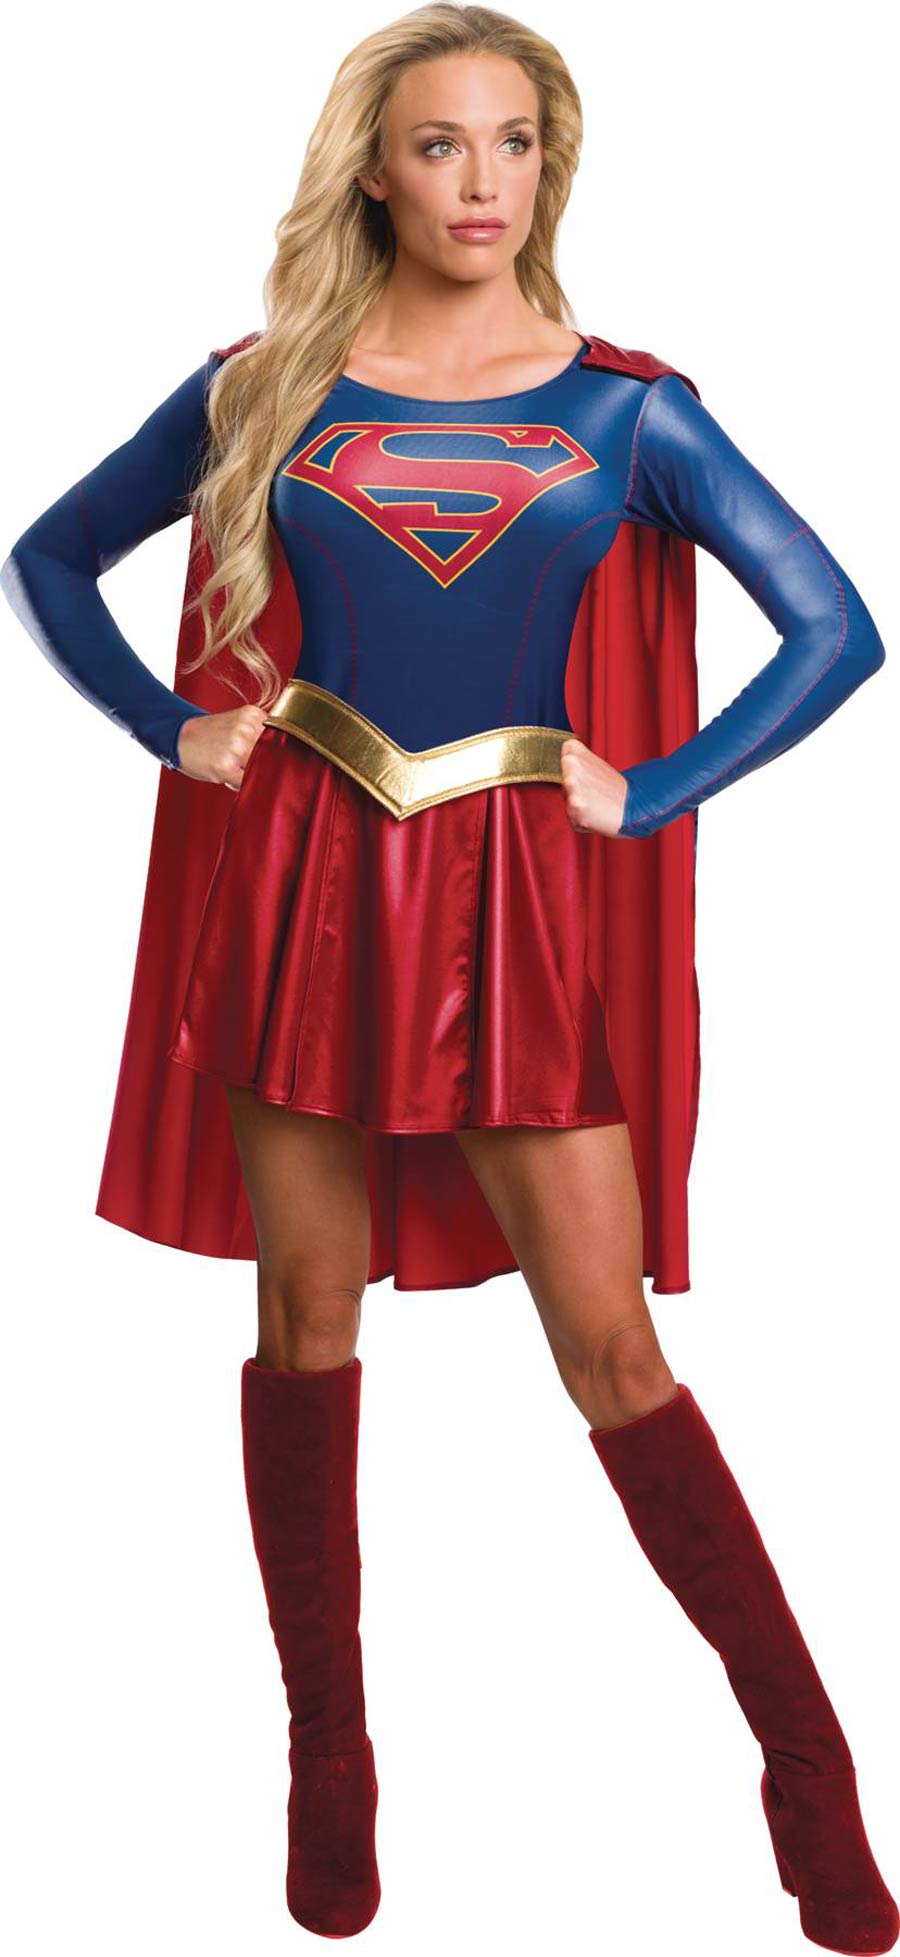 DC Supergirl TV Series Adult Costume Medium